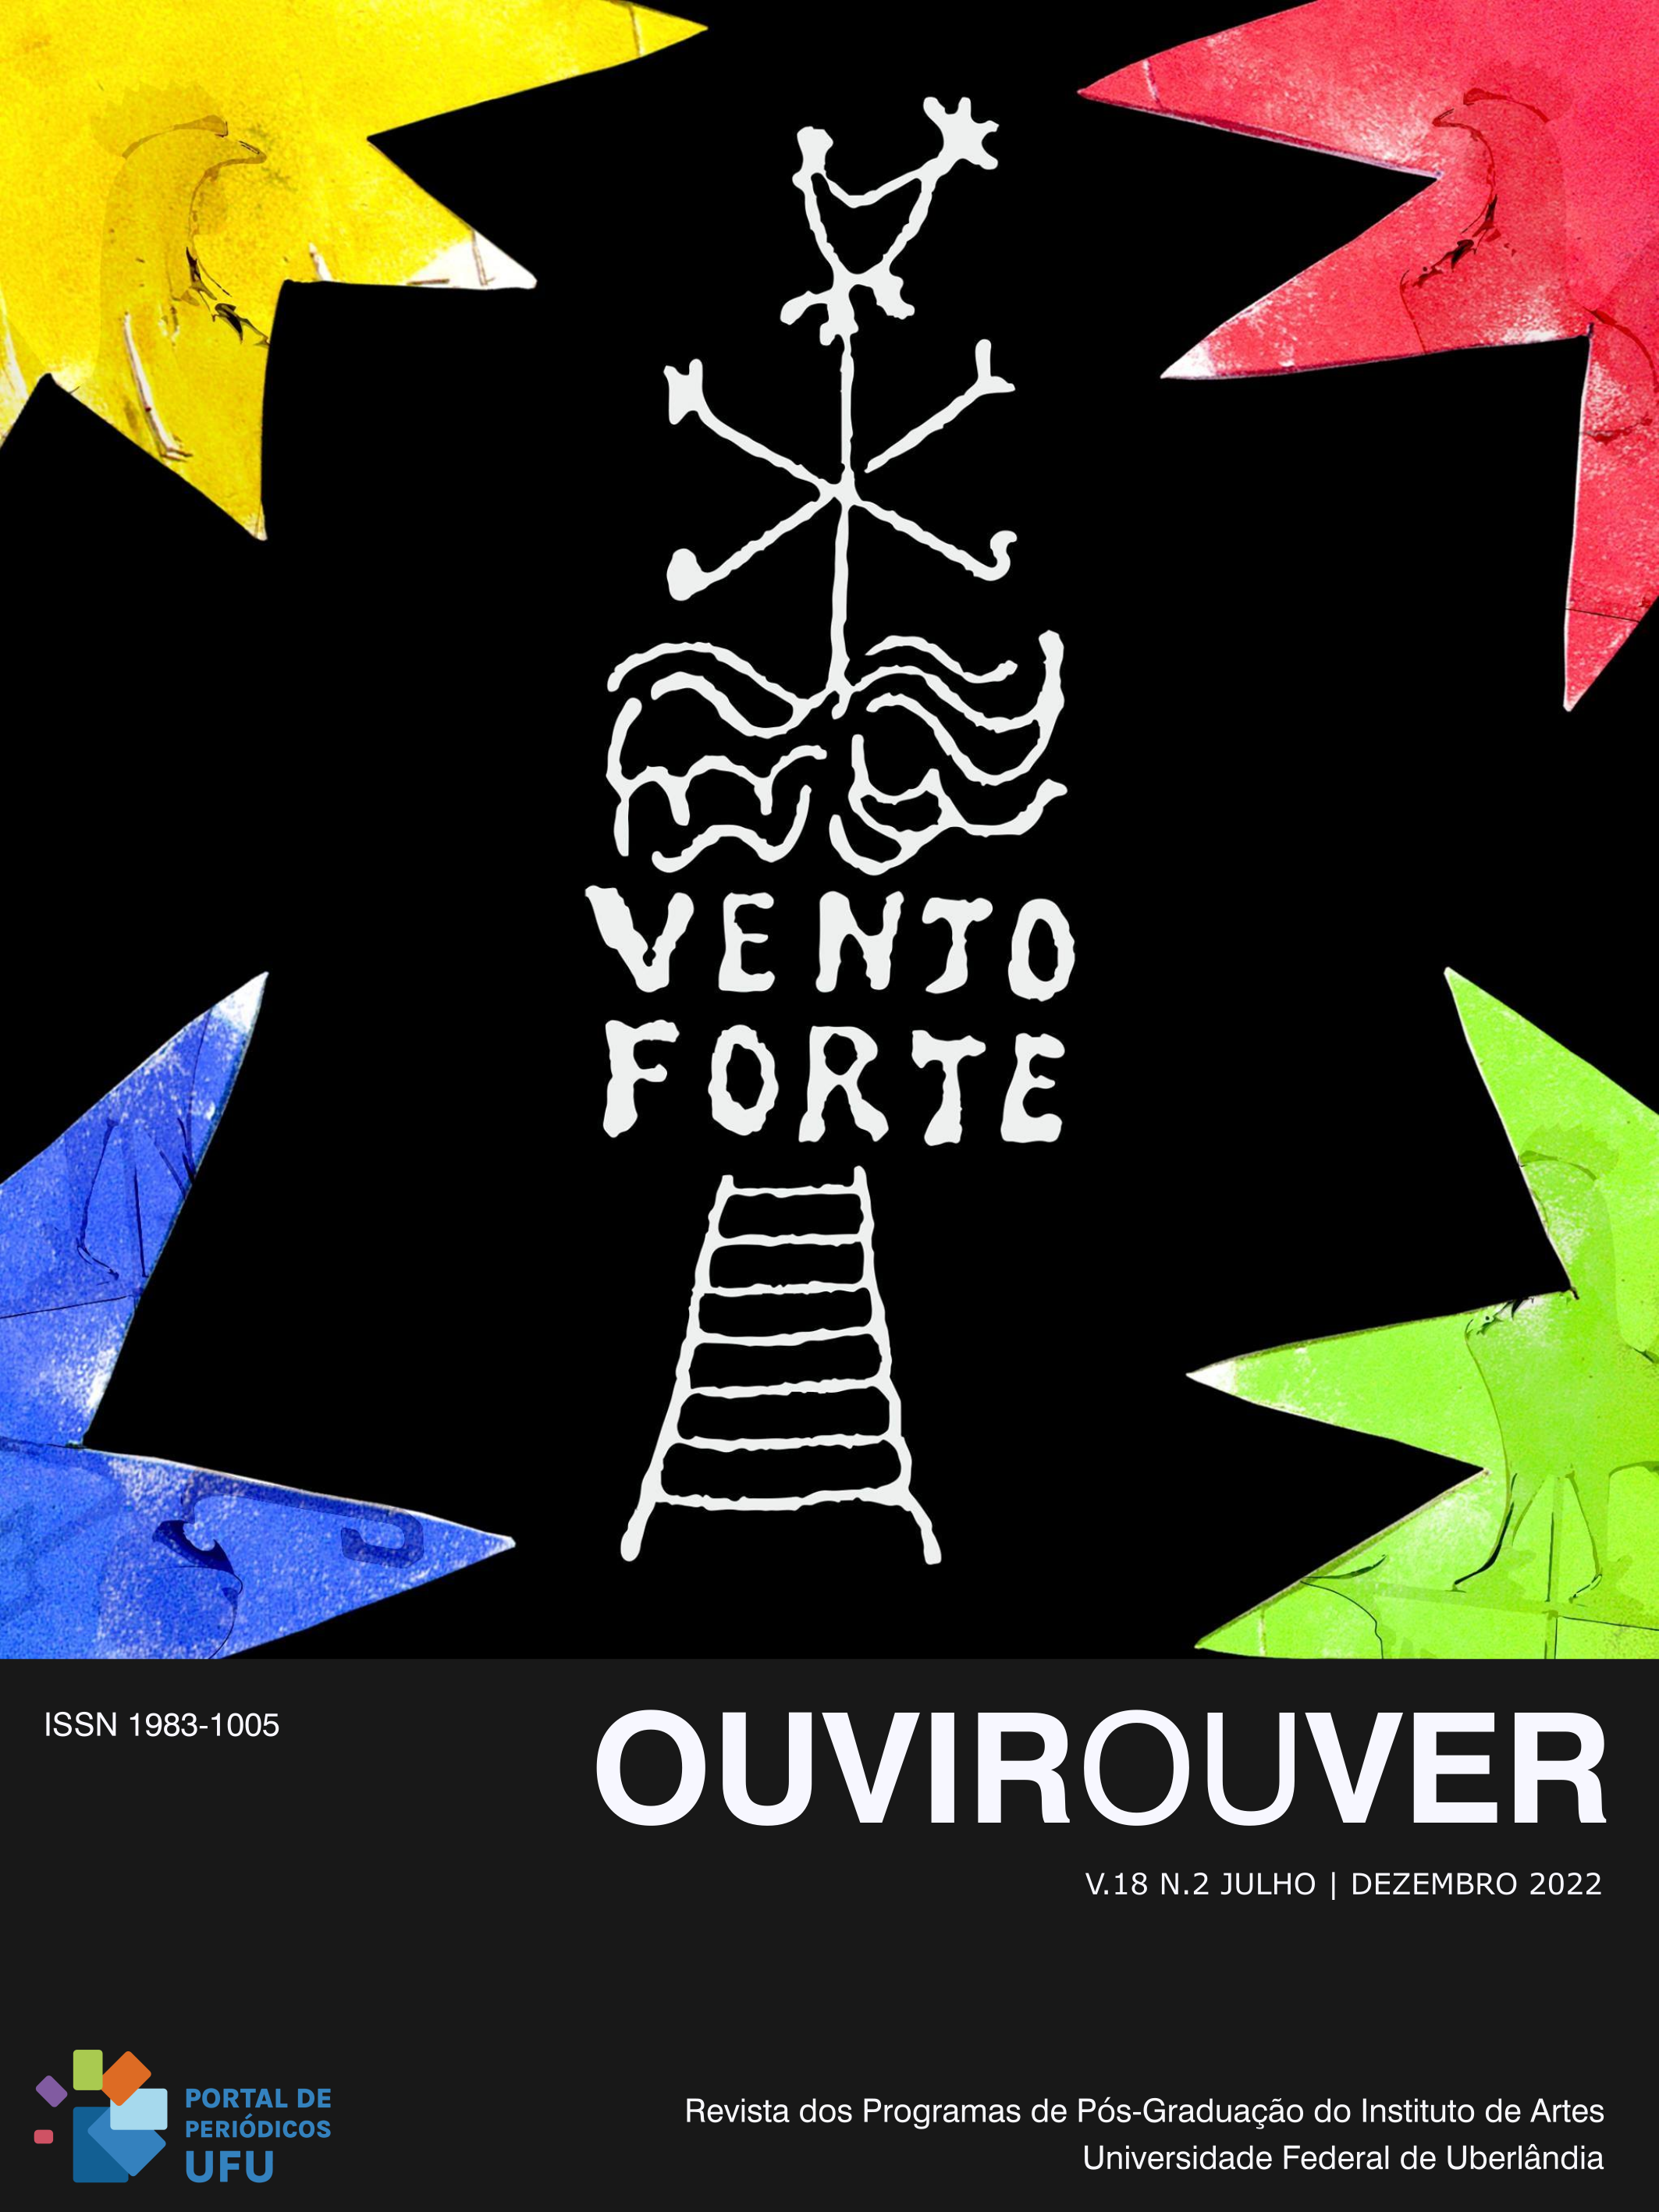 Imagem da capa: Símbolo do Teatro Ventoforte. Desenho de Ilo Krugli e tratamento gráfico, com cores, de Fábio Viana.